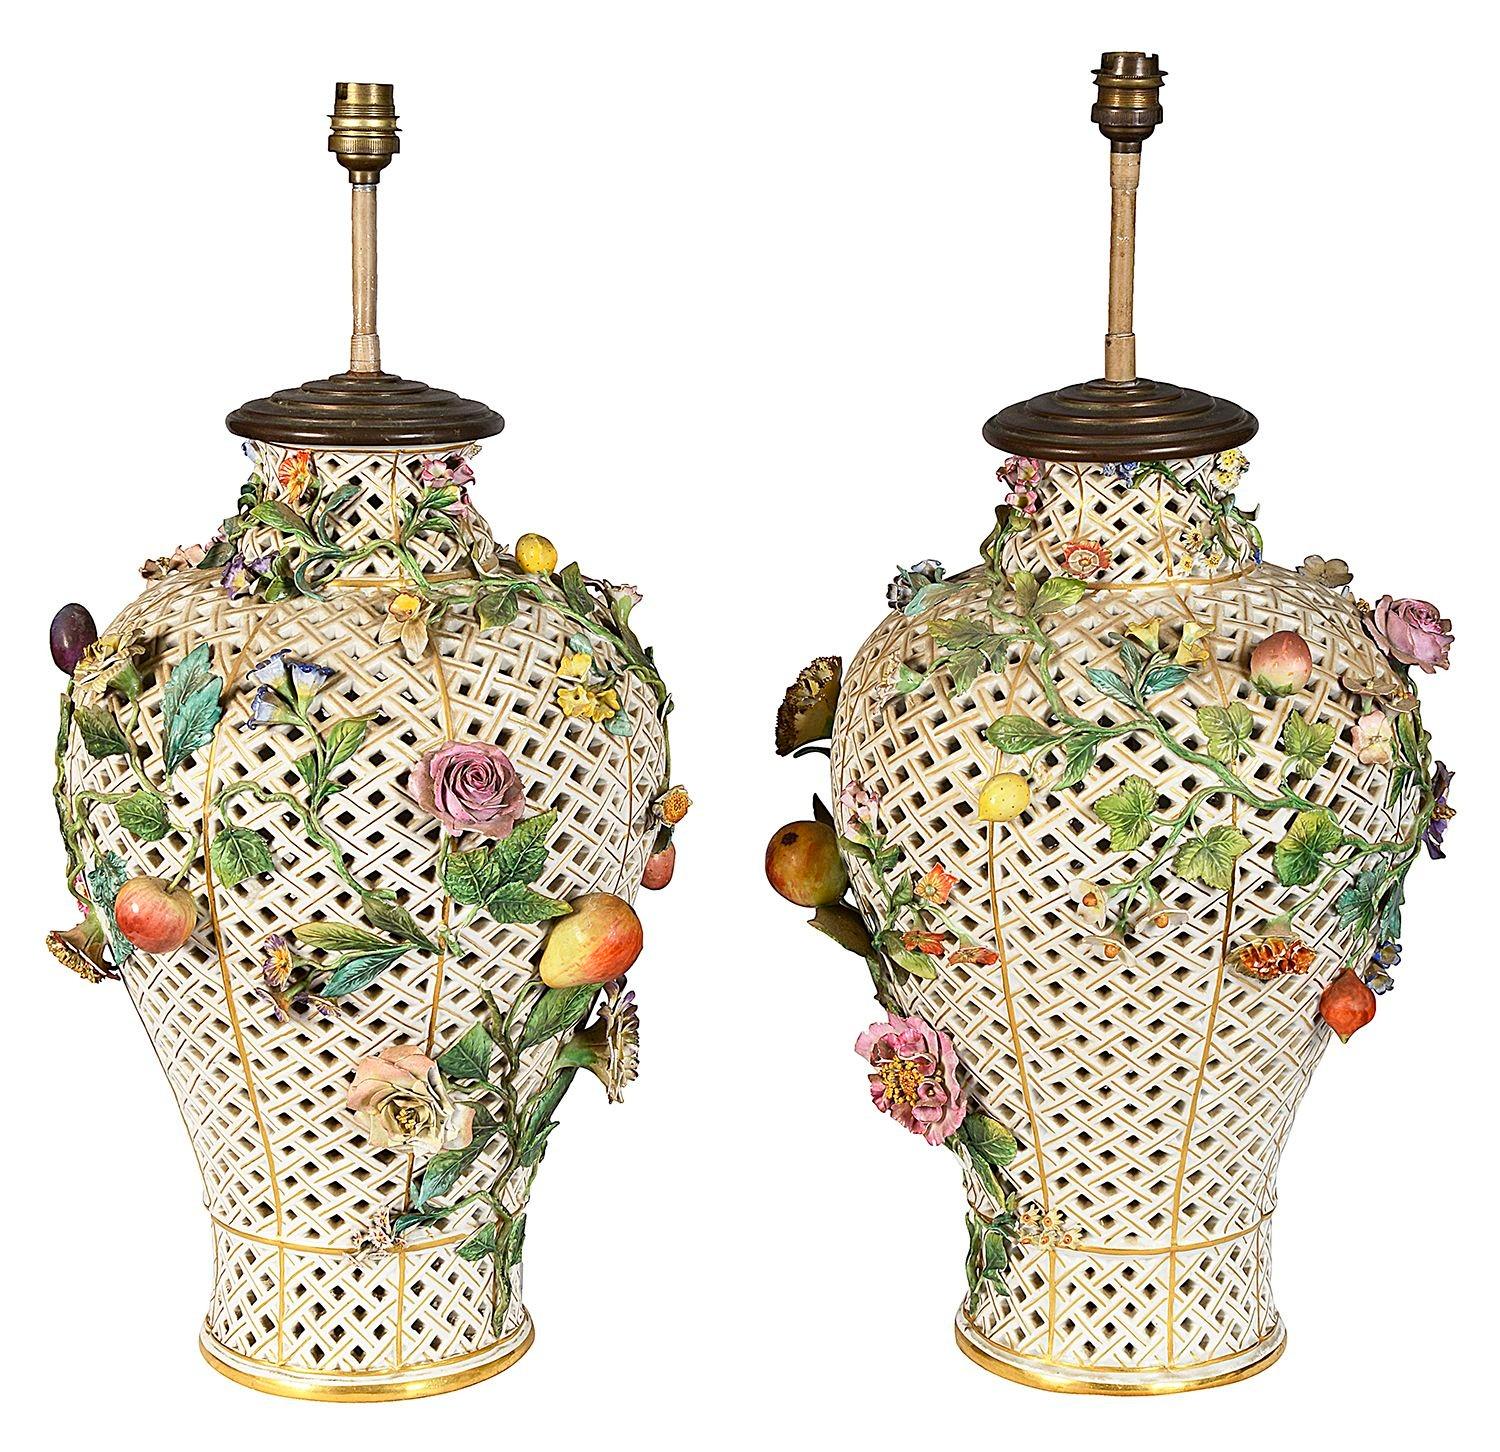 Paire de vases / lampes de bonne qualité en porcelaine de Meissen du XIXe siècle, percés et incrustés de fleurs.
La base est ornée d'épées croisées bleues.
Lot 73 TUKZN